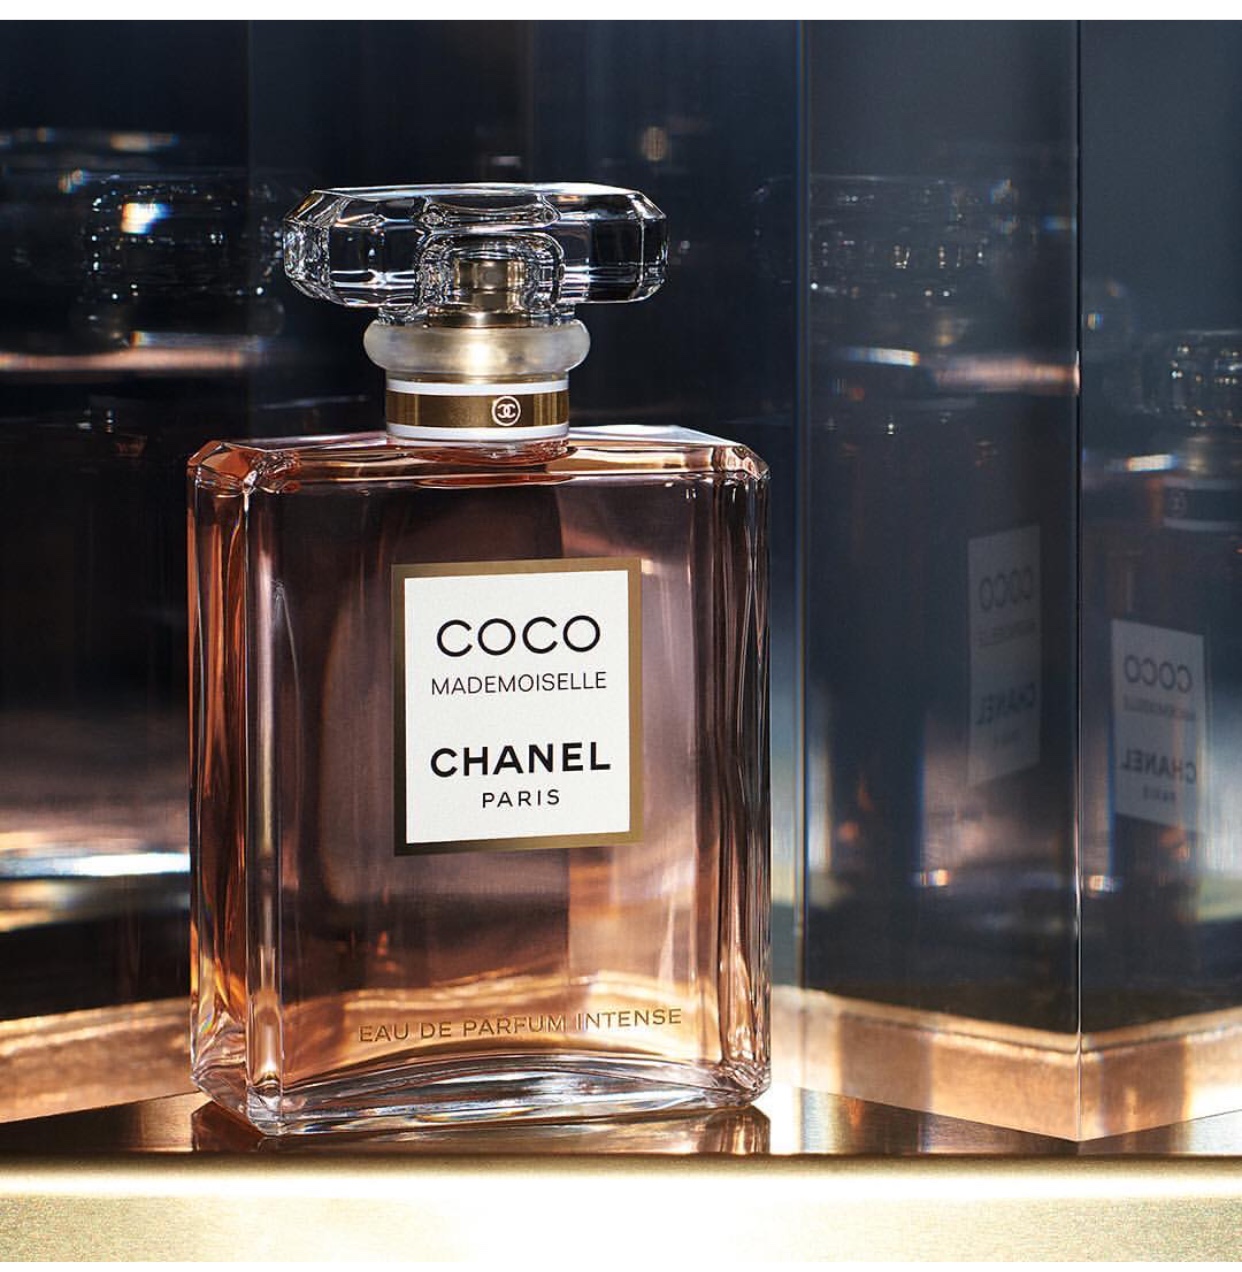 Chanel Coco Mademoiselle For Women price in Dubai UAE  Compare Prices